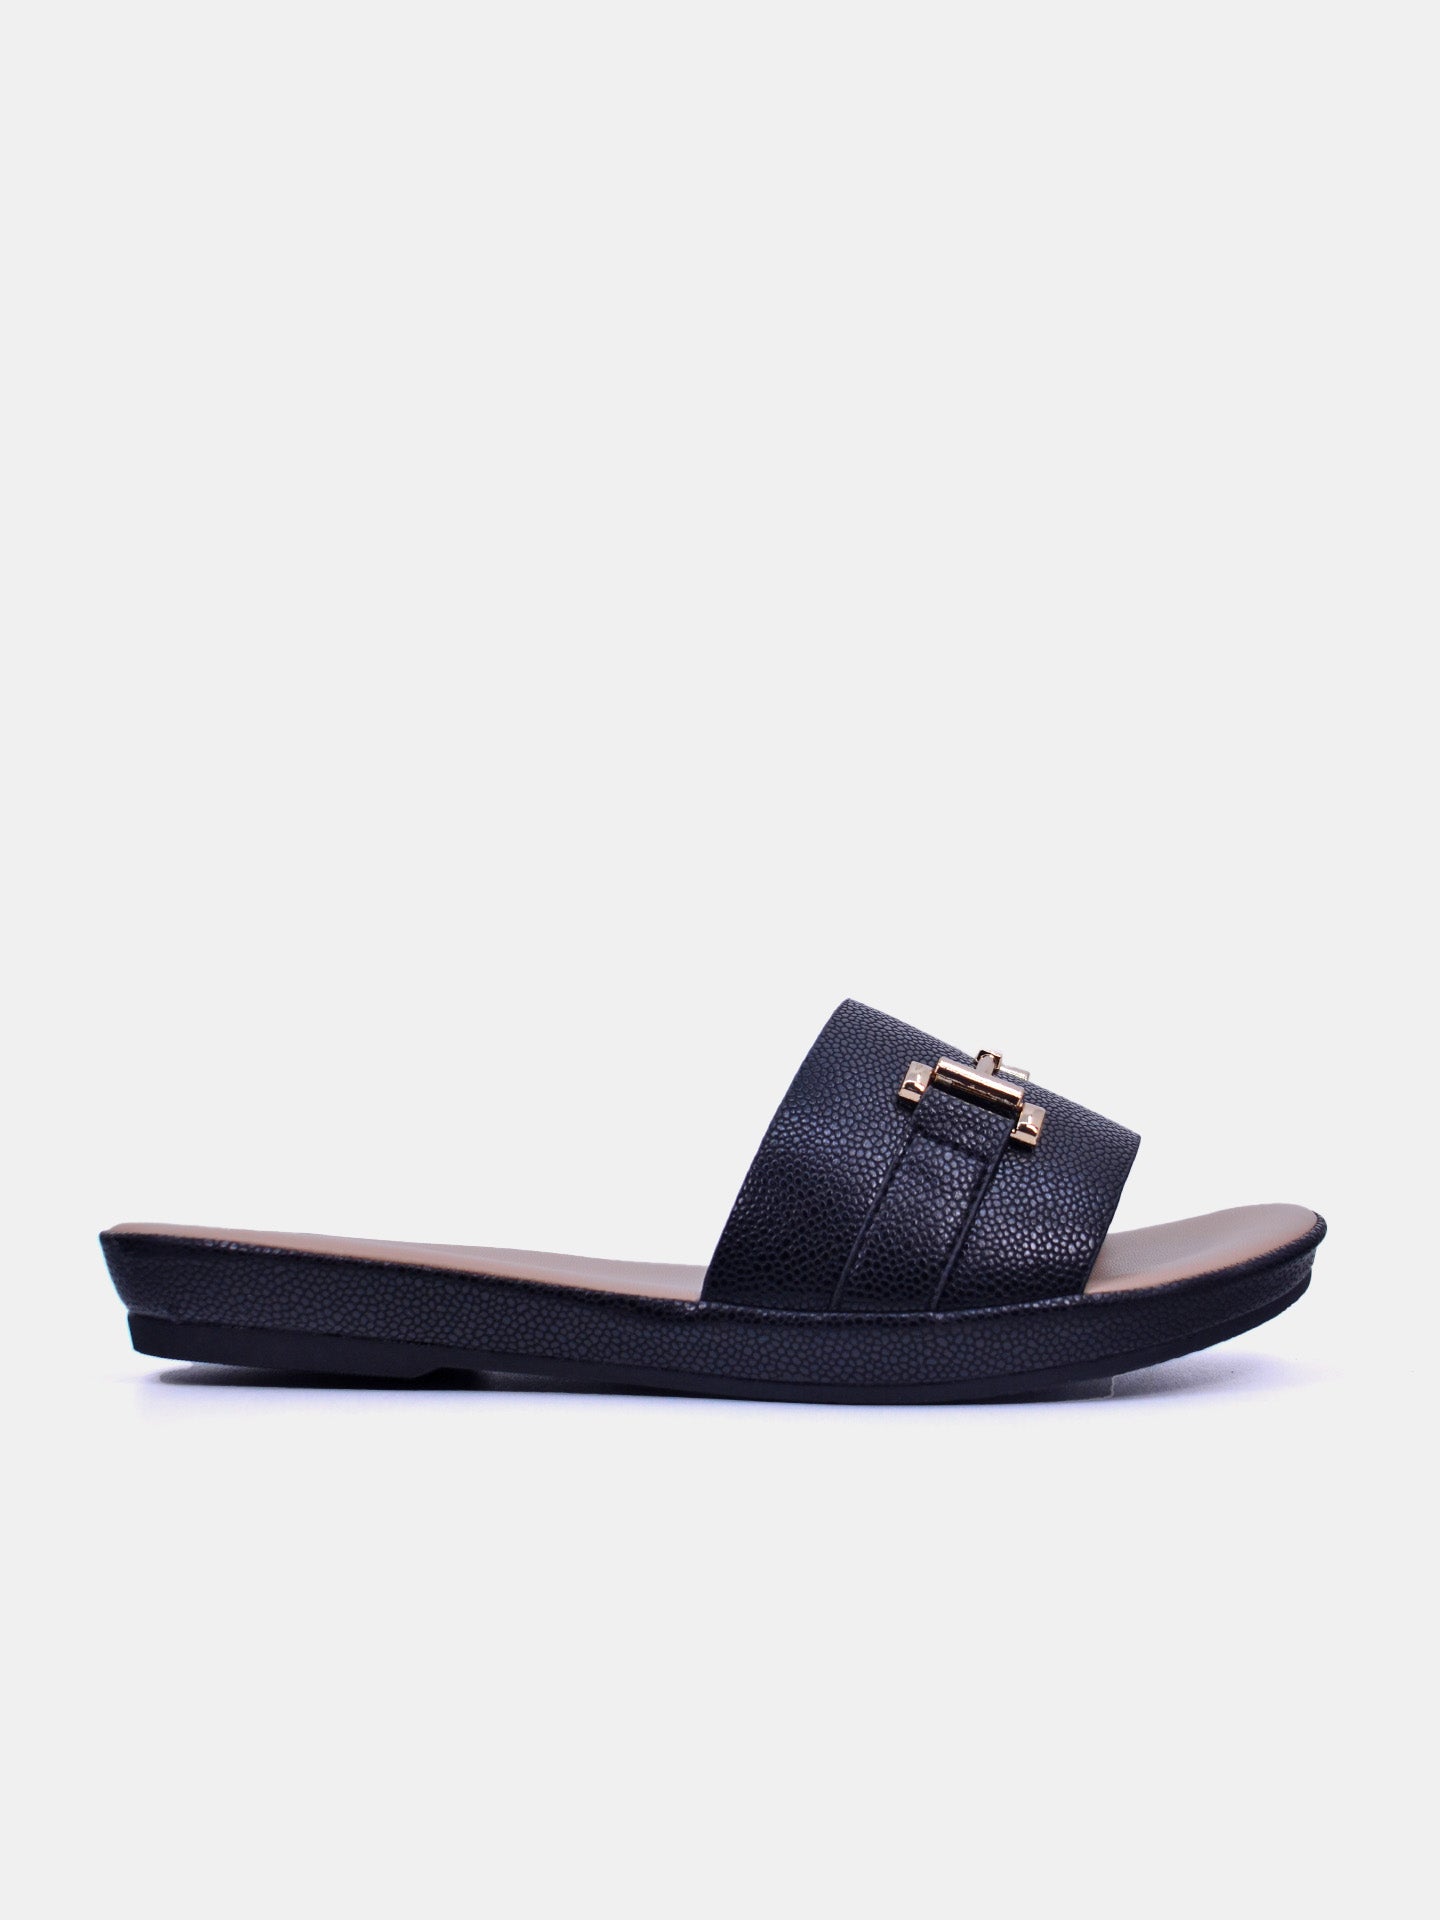 Michelle Morgan 114RC676 Women's Flat Sandals #color_Black